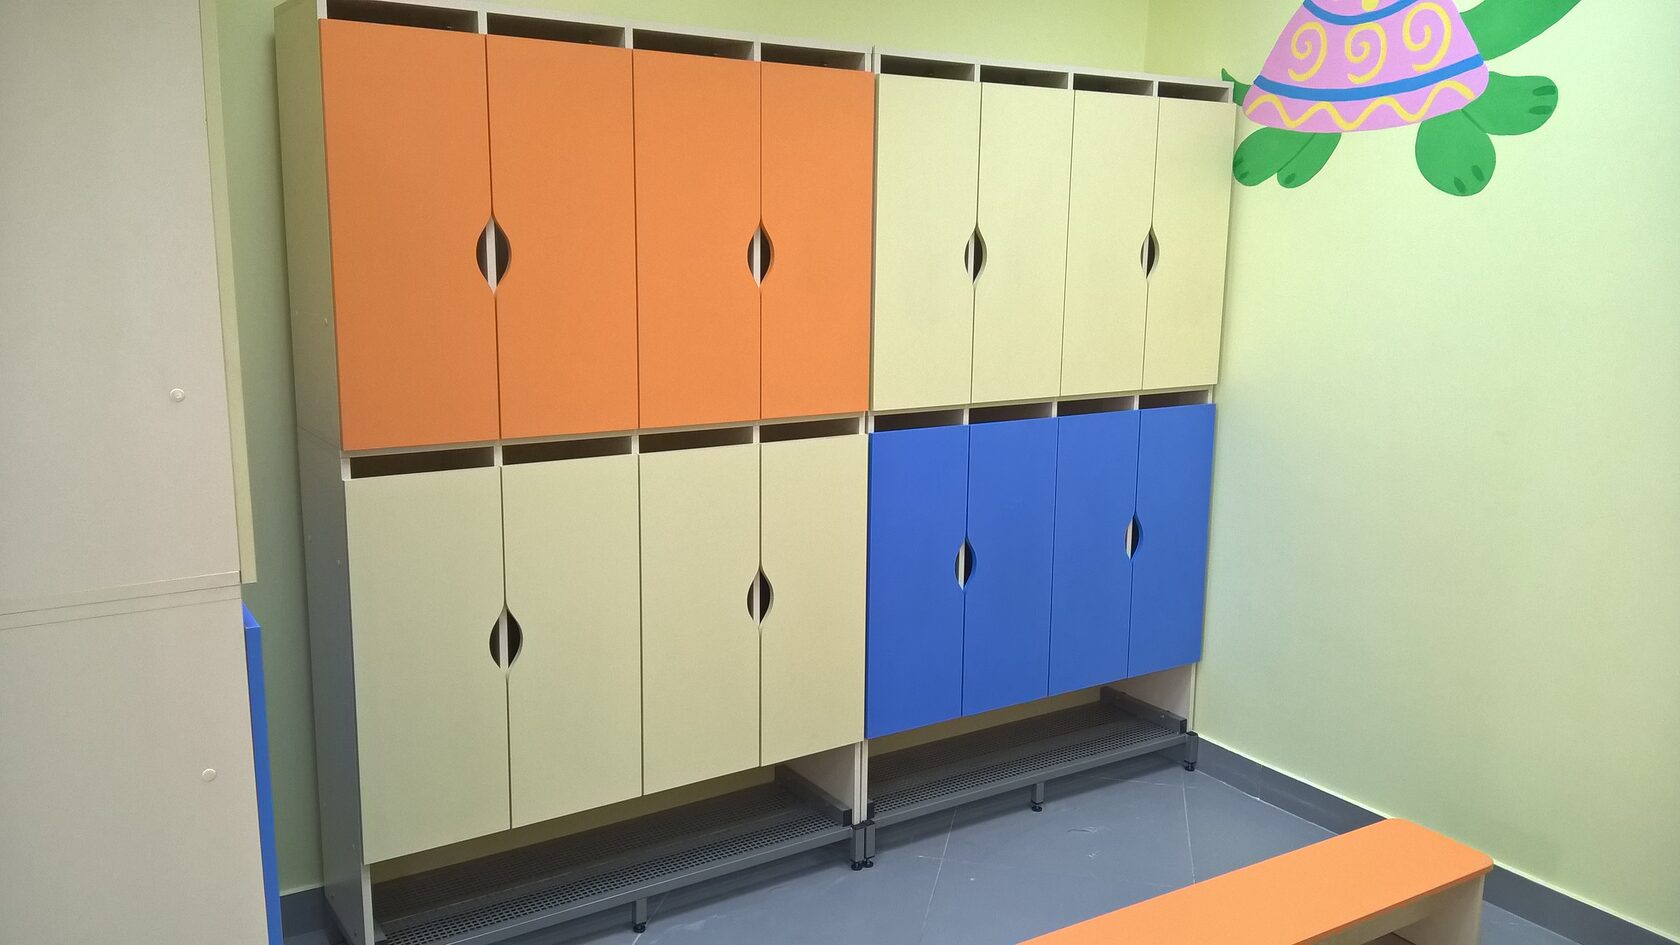 Шкаф двухъярусный для детского сада